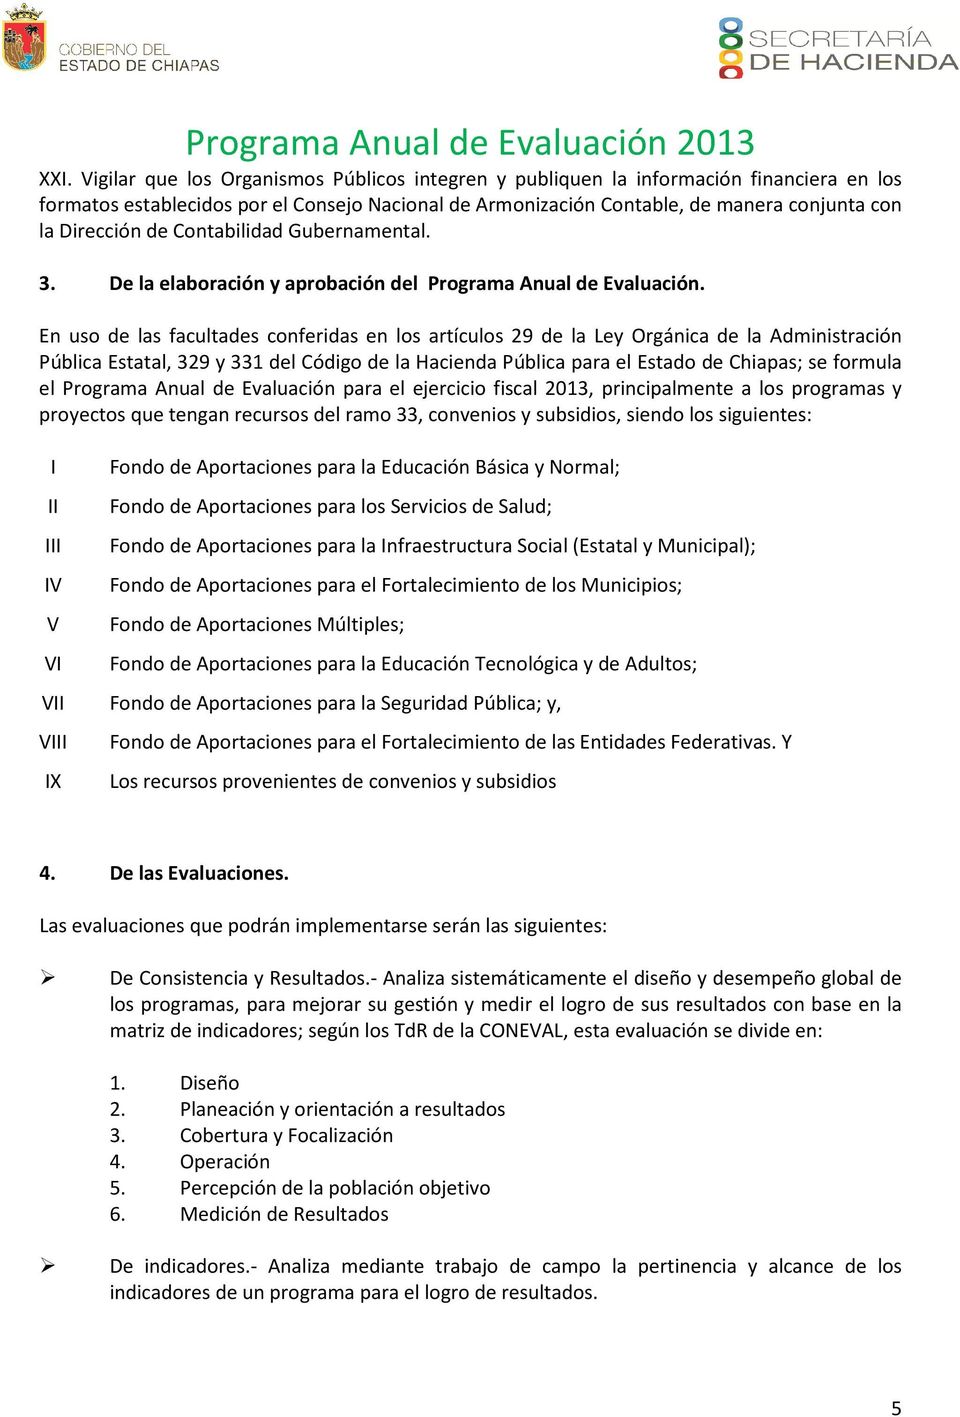 En uso de las facultades conferidas en los artículos 29 de la Ley Orgánica de la Administración Pública Estatal, 329 y 331 del Código de la Hacienda Pública para el Estado de Chiapas; se formula el